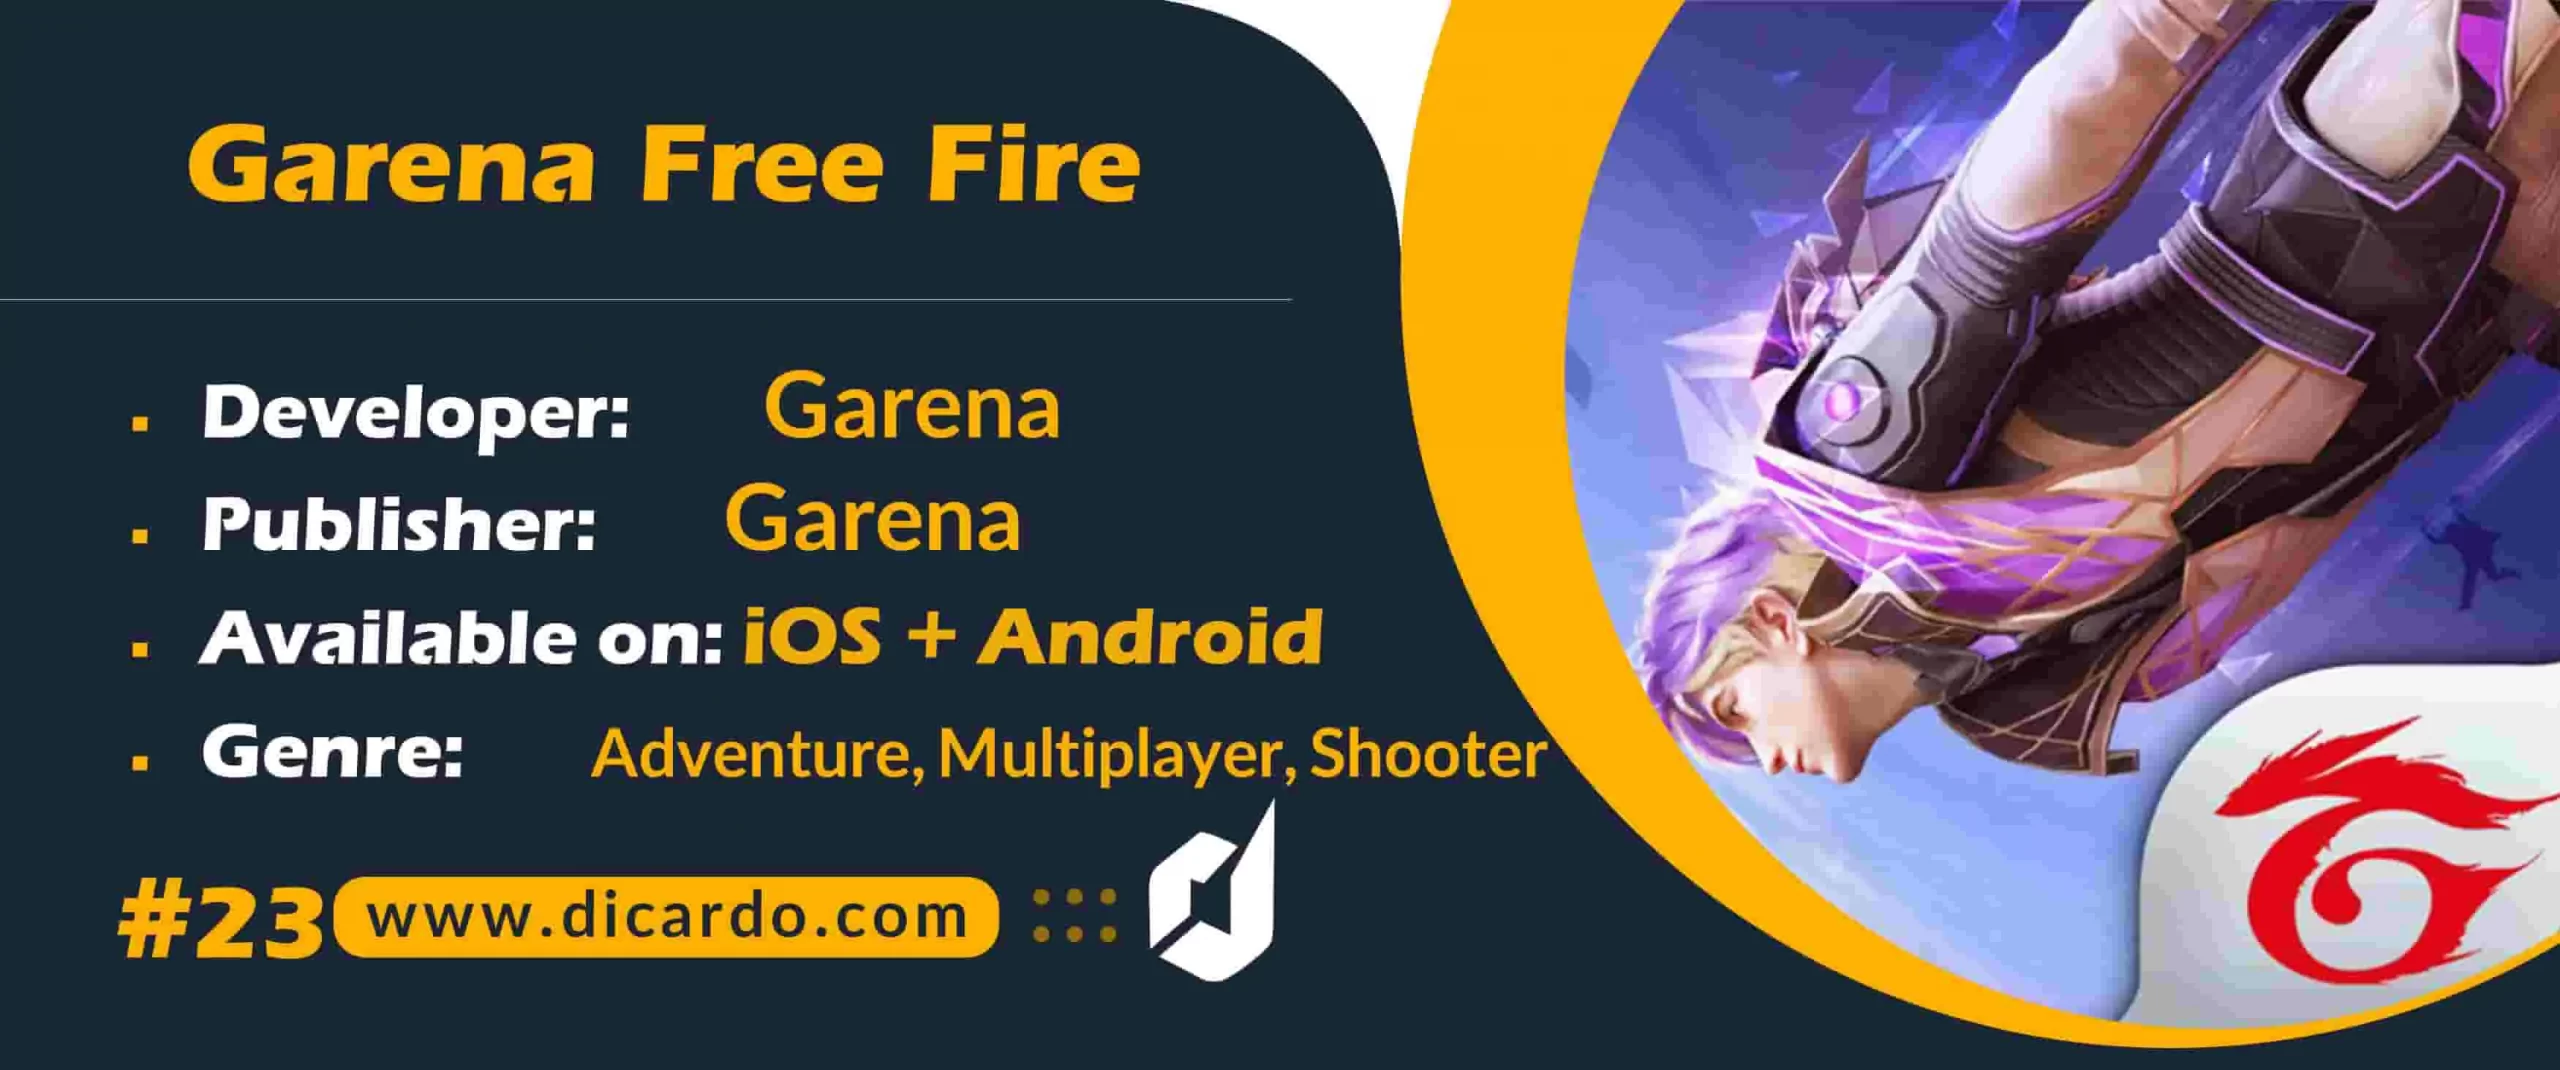 گارنا فری فایر Garena Free Fire از بهترین بازیهای چندنفره ی بتل رویال